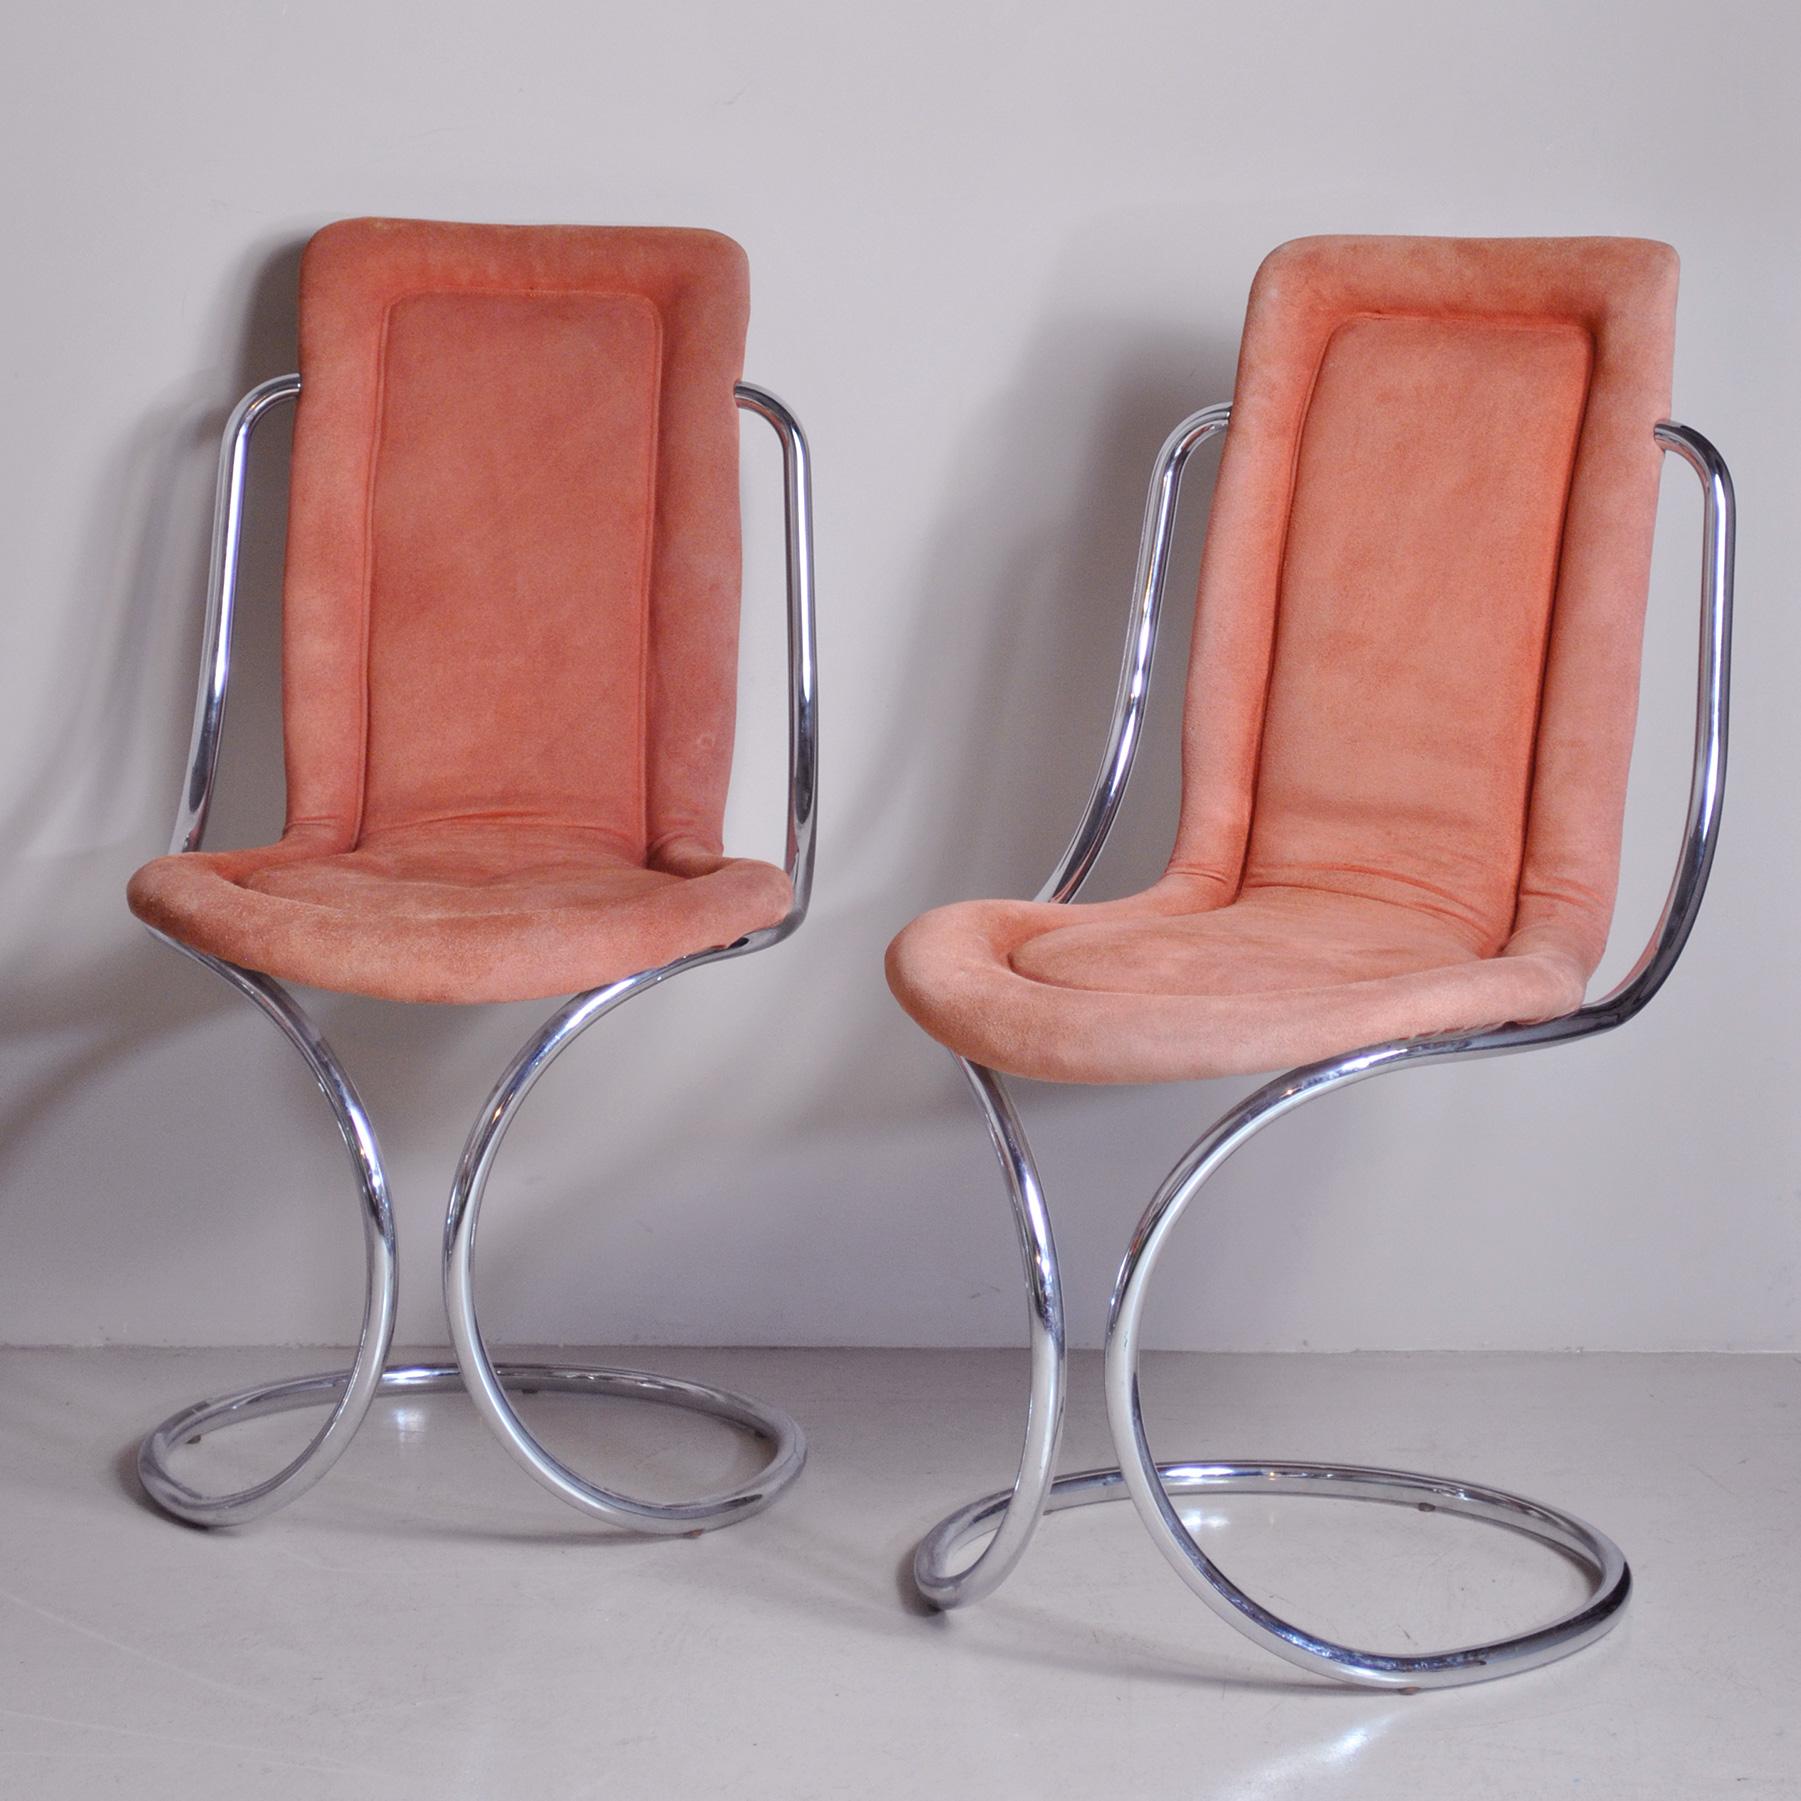 Late 20th Century Italian Midcentury Tecnosalotto Chairs 70's